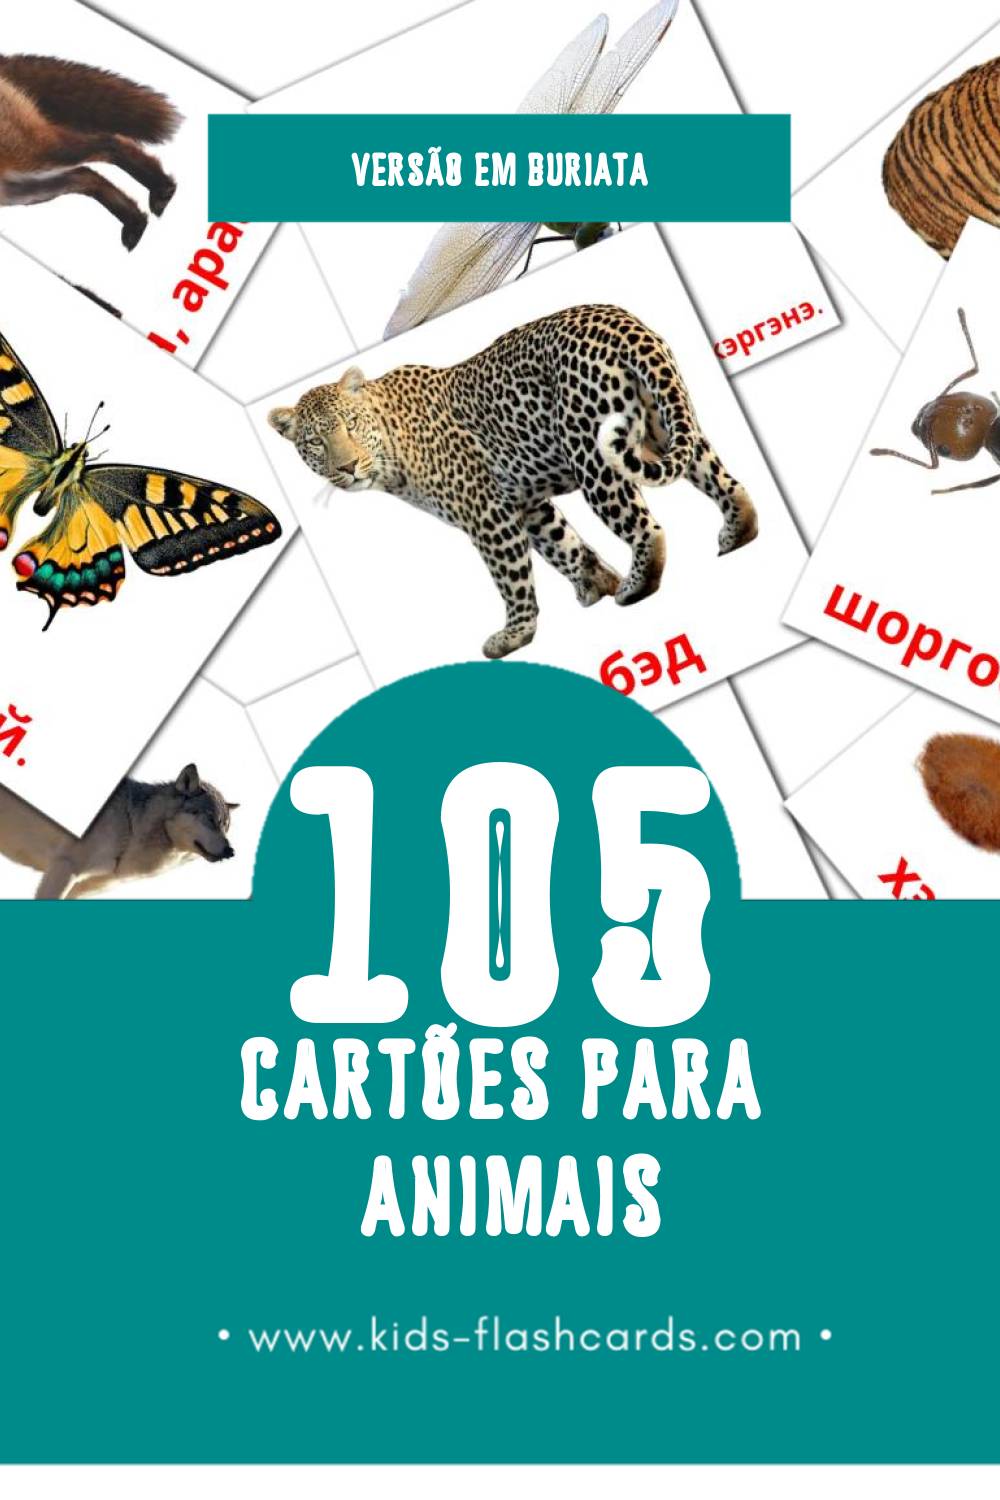 Flashcards de Амитан Visuais para Toddlers (116 cartões em Buriata)